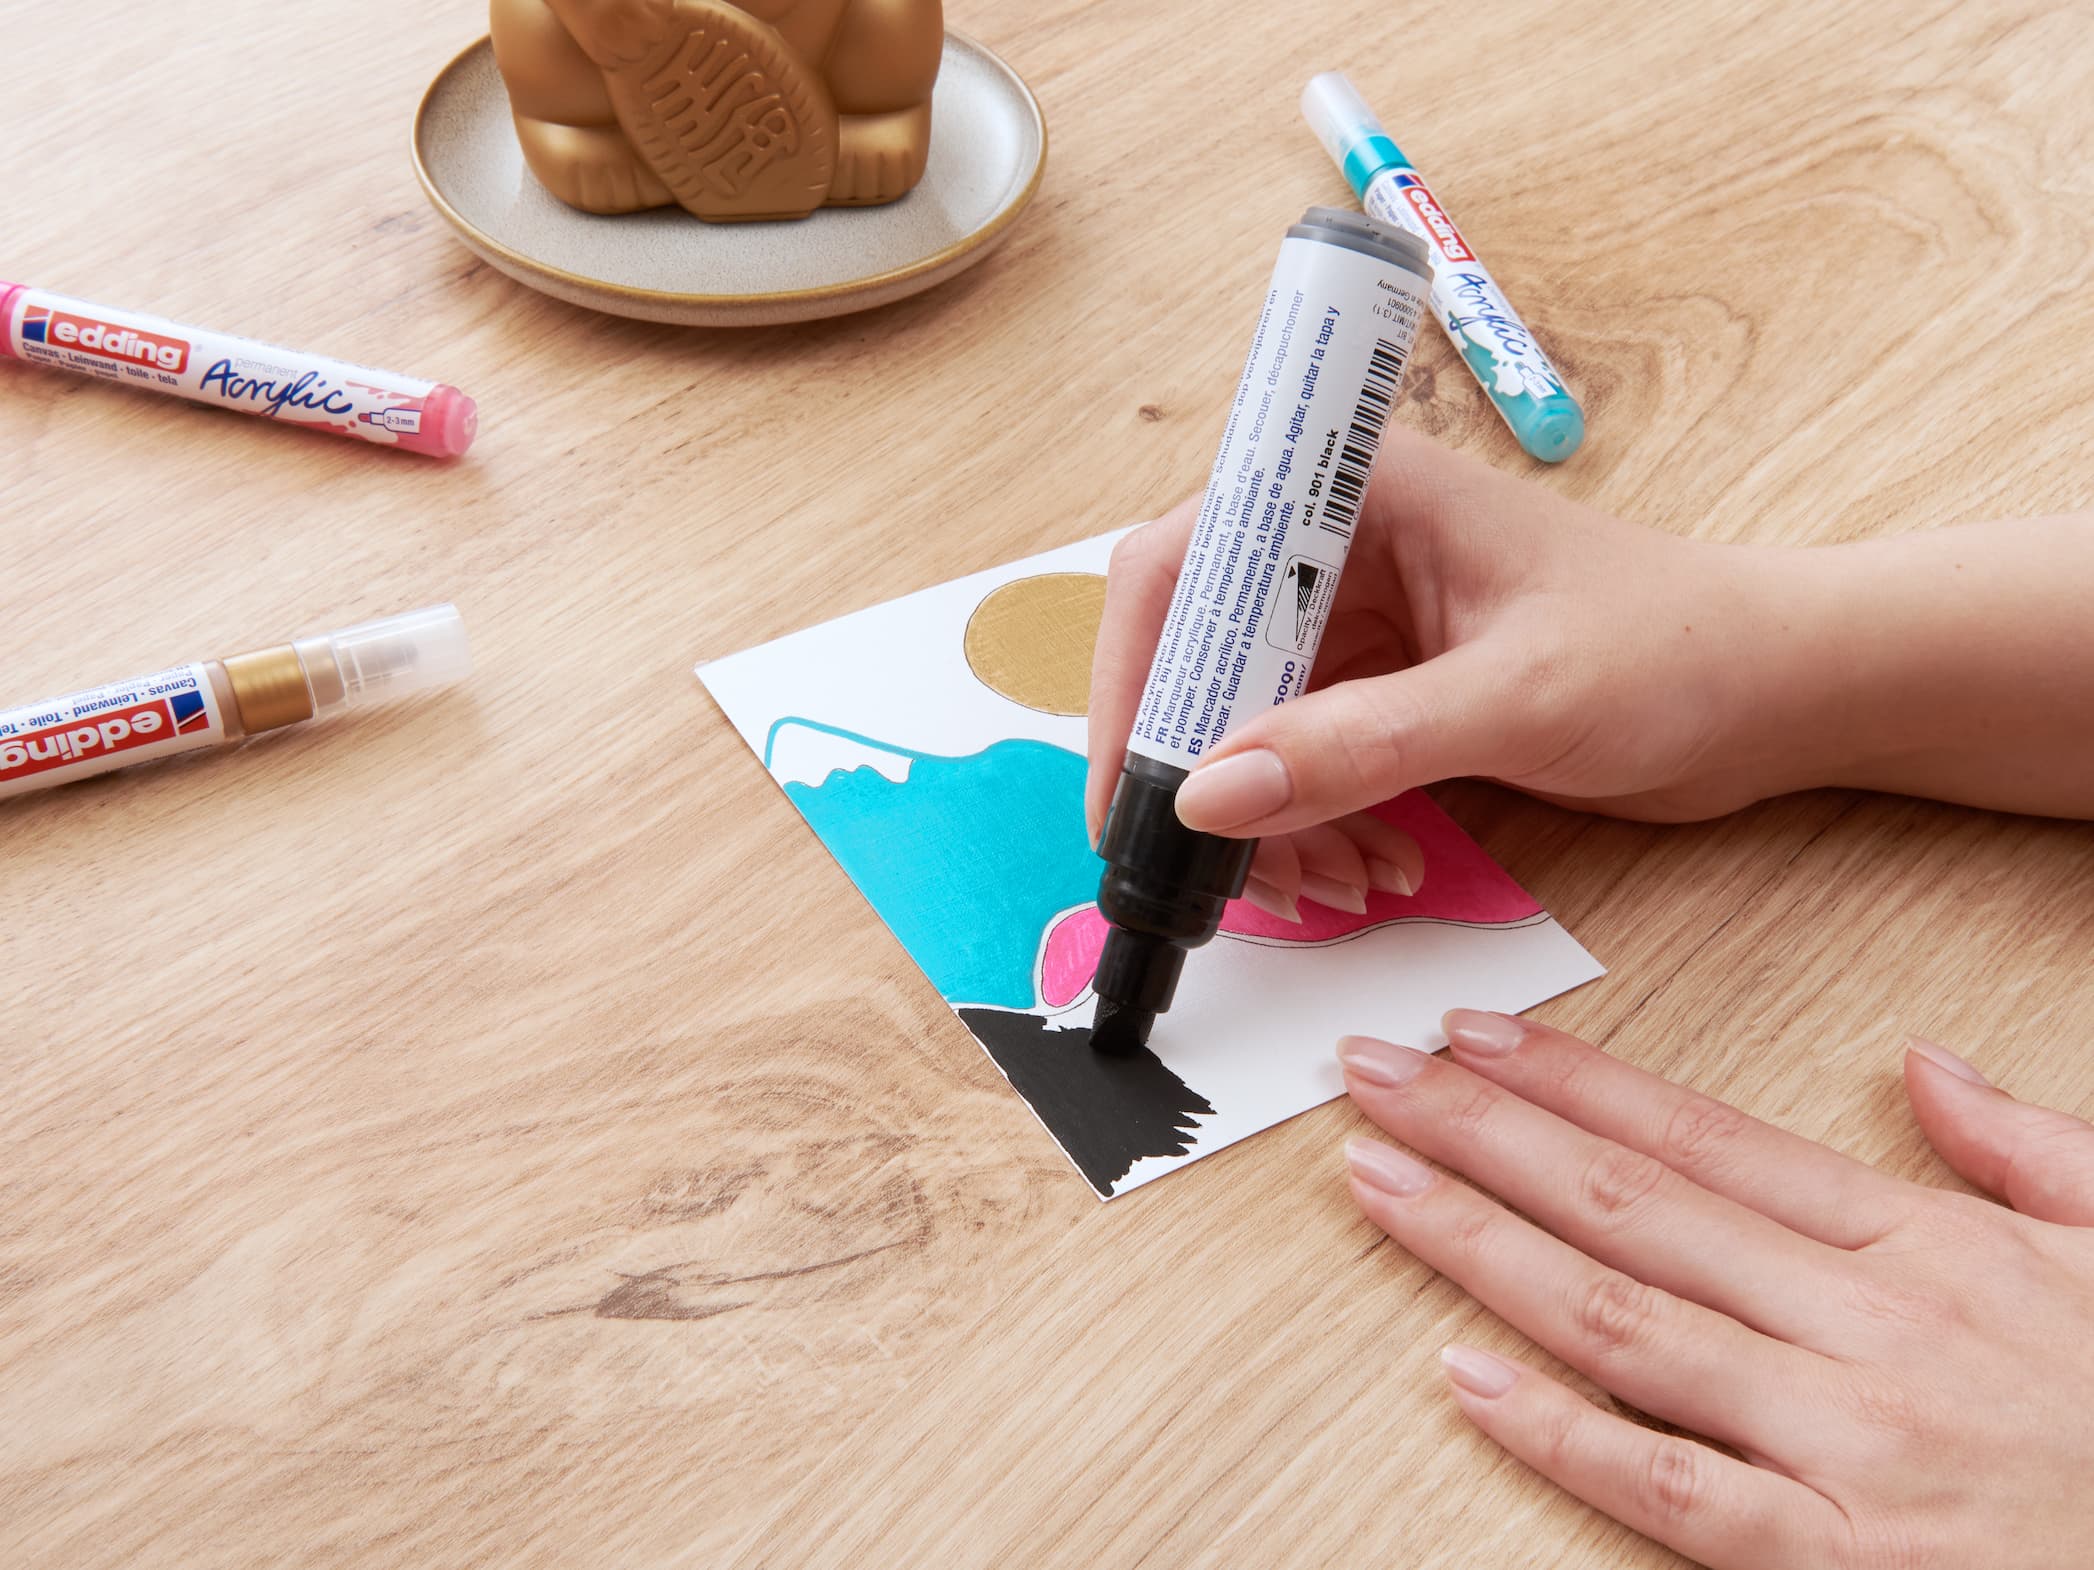 Die Hände einer Person färben mit einem edding 5000 Acrylmarker breit einen Abschnitt eines Papiers mit einem abstrakten Design, zusammen mit anderen Malutensilien wie Markern und einem Stempel auf einem.